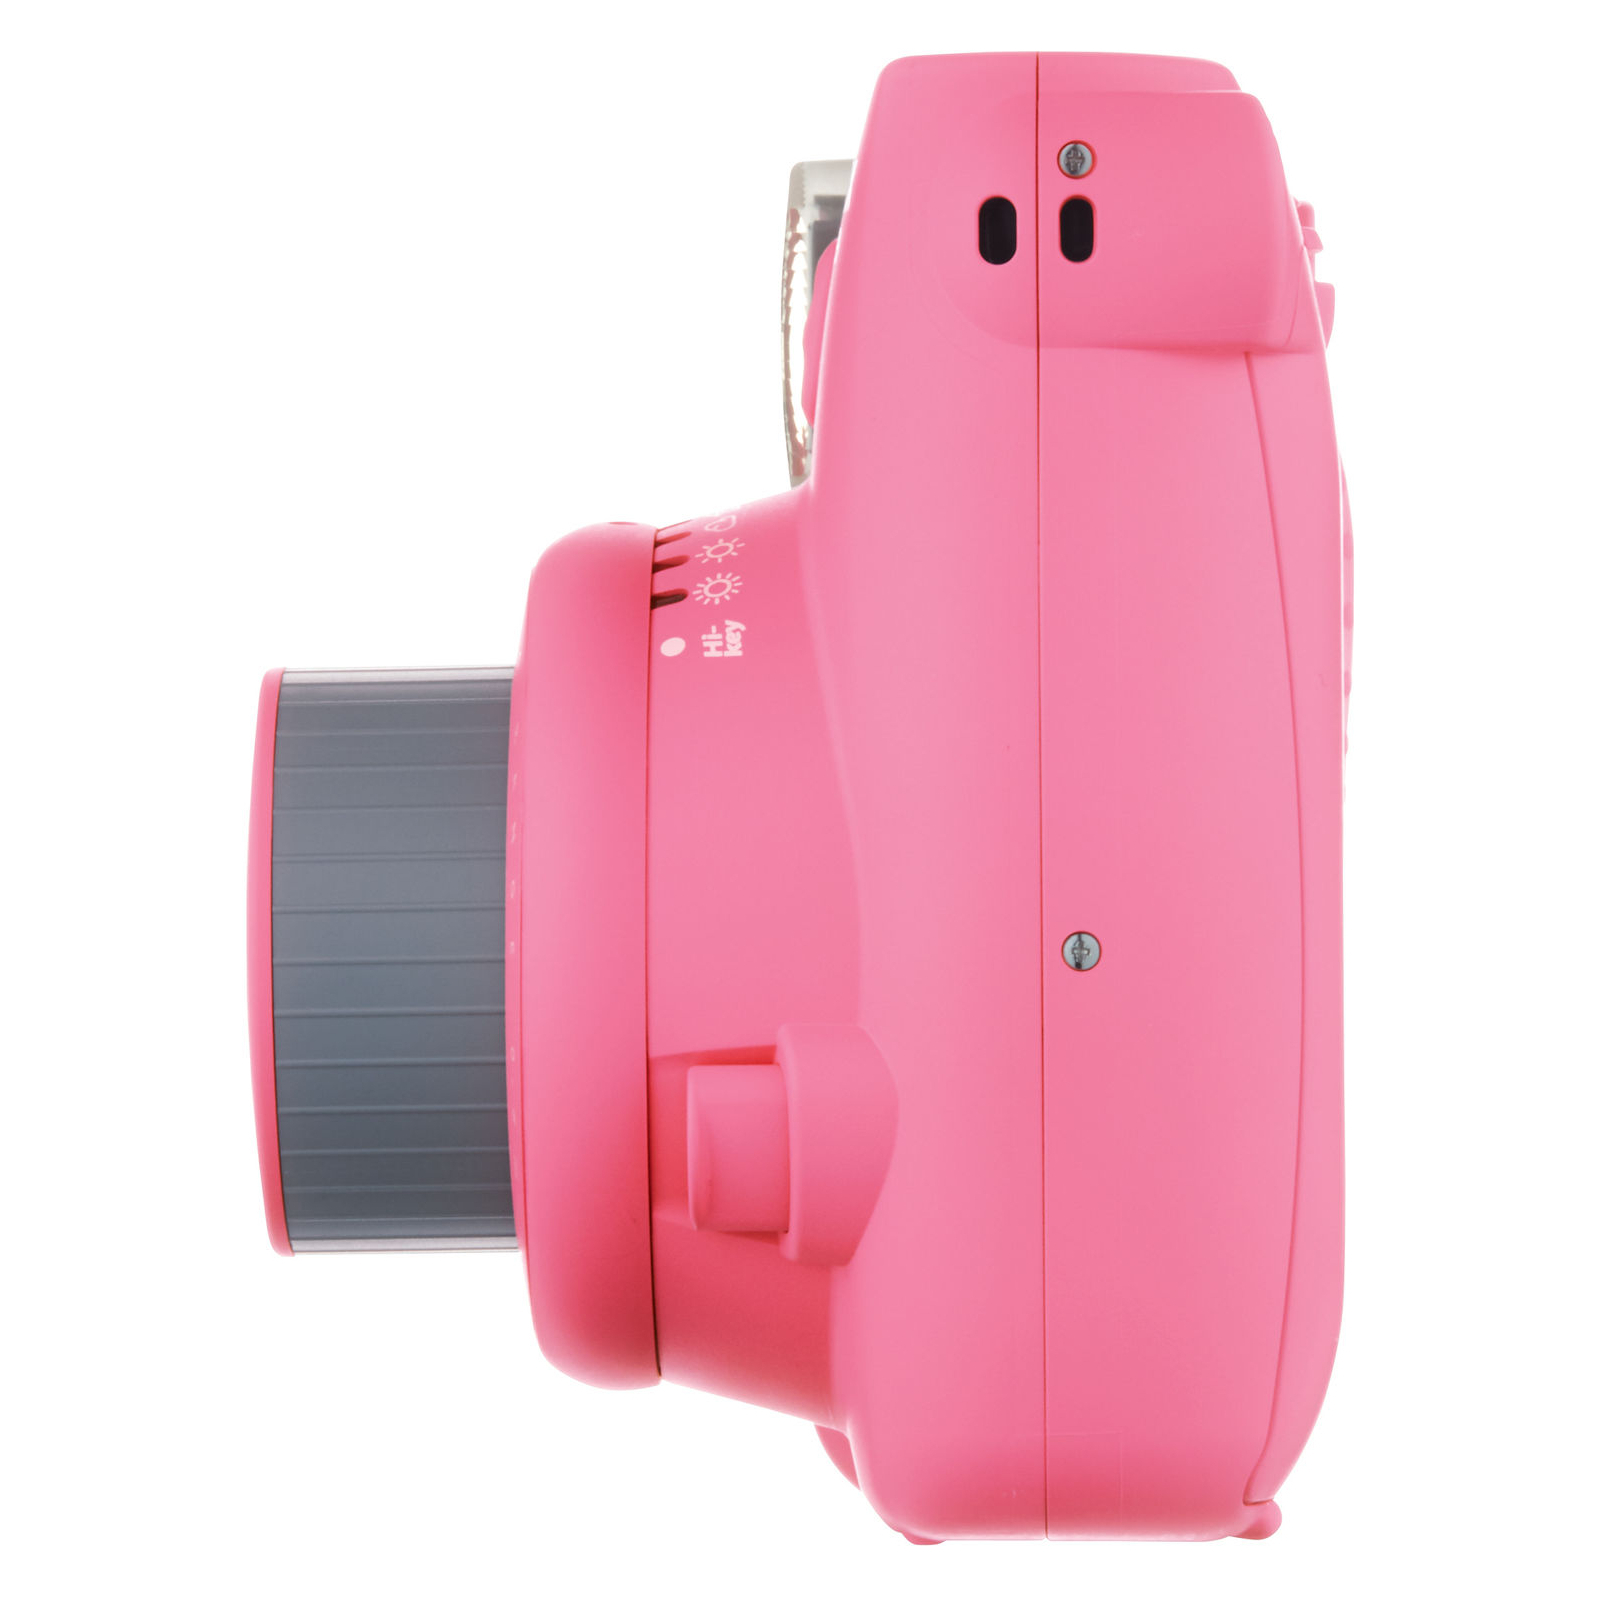 Камера моментальной печати Fujifilm INSTAX Mini 9 Flamingo Pink (16550784) изображение 3